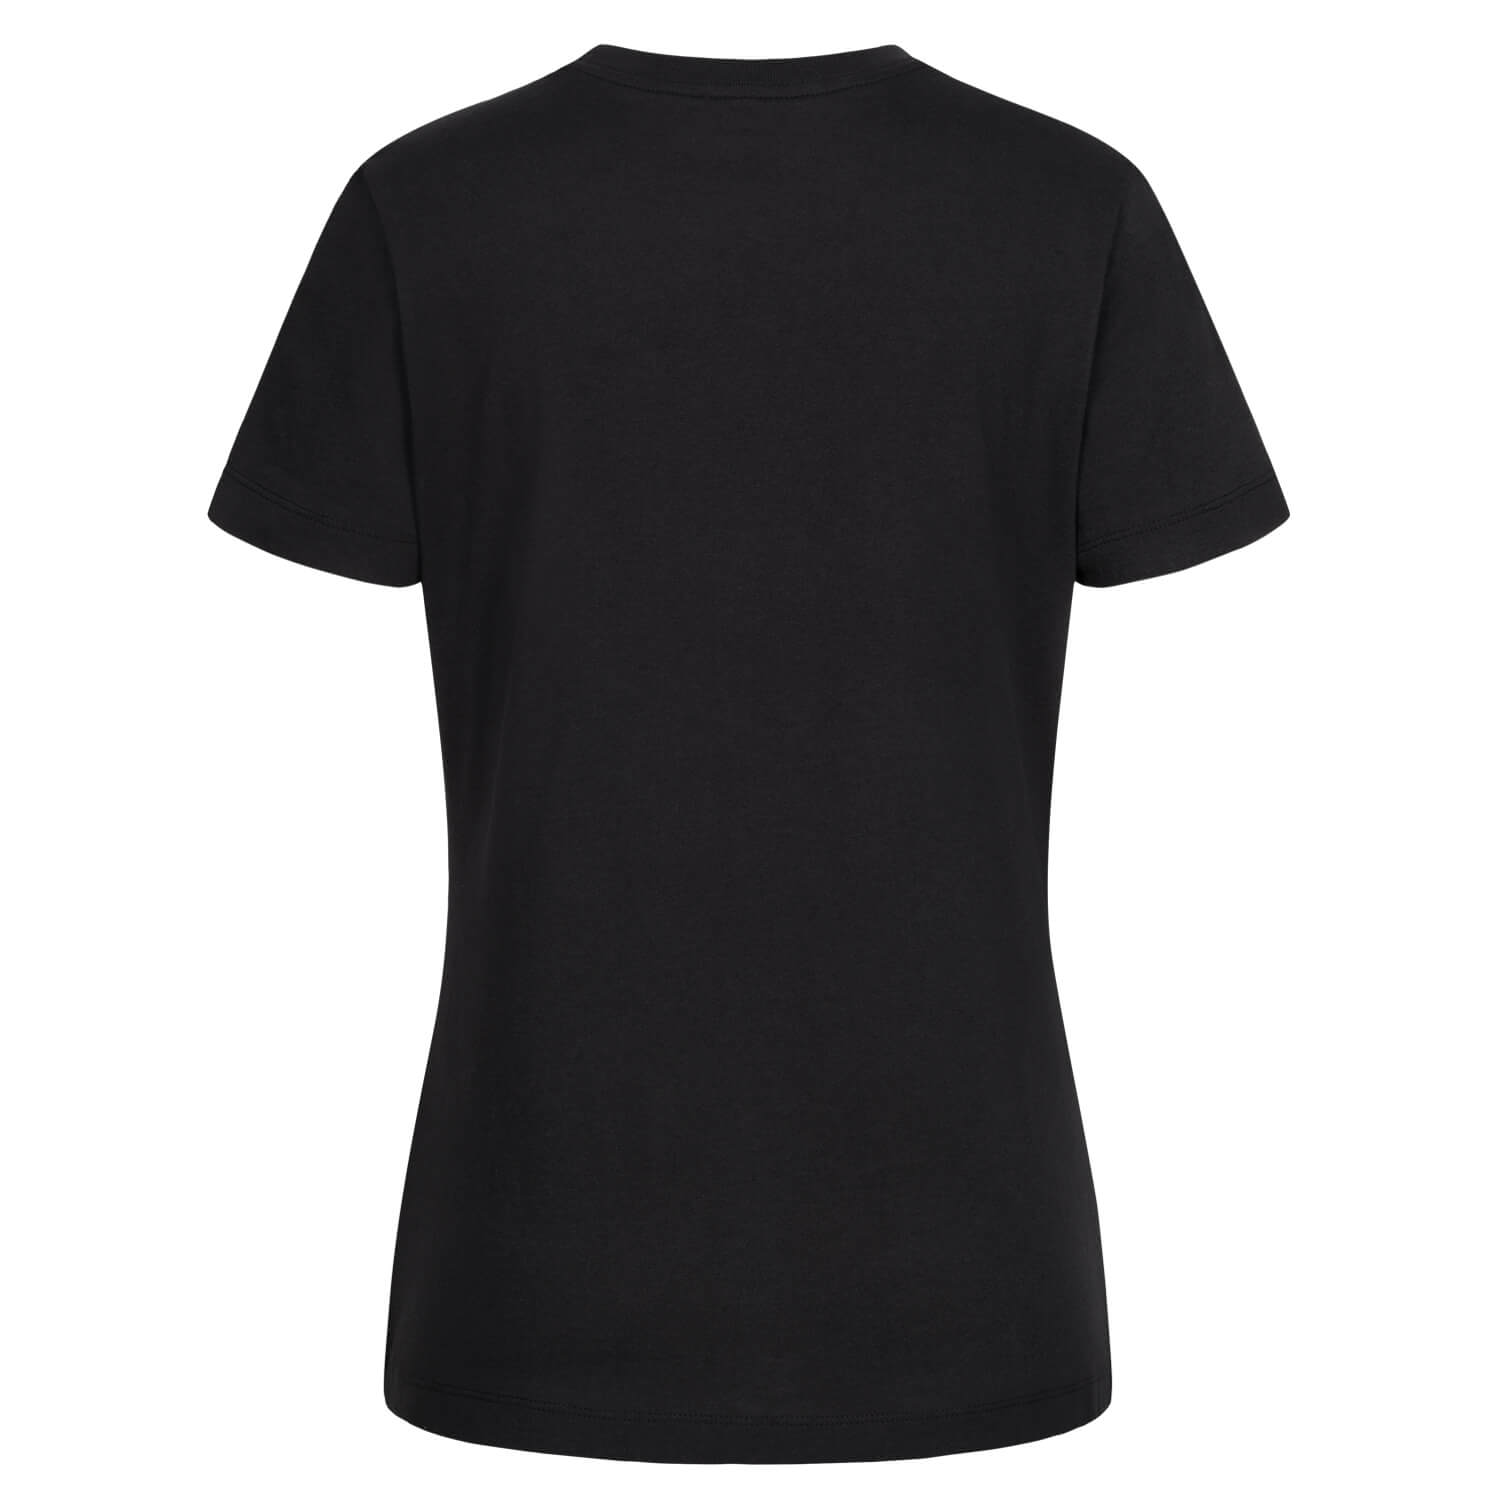 Bild 2: Nike Damen T-Shirt 23 Schwarz